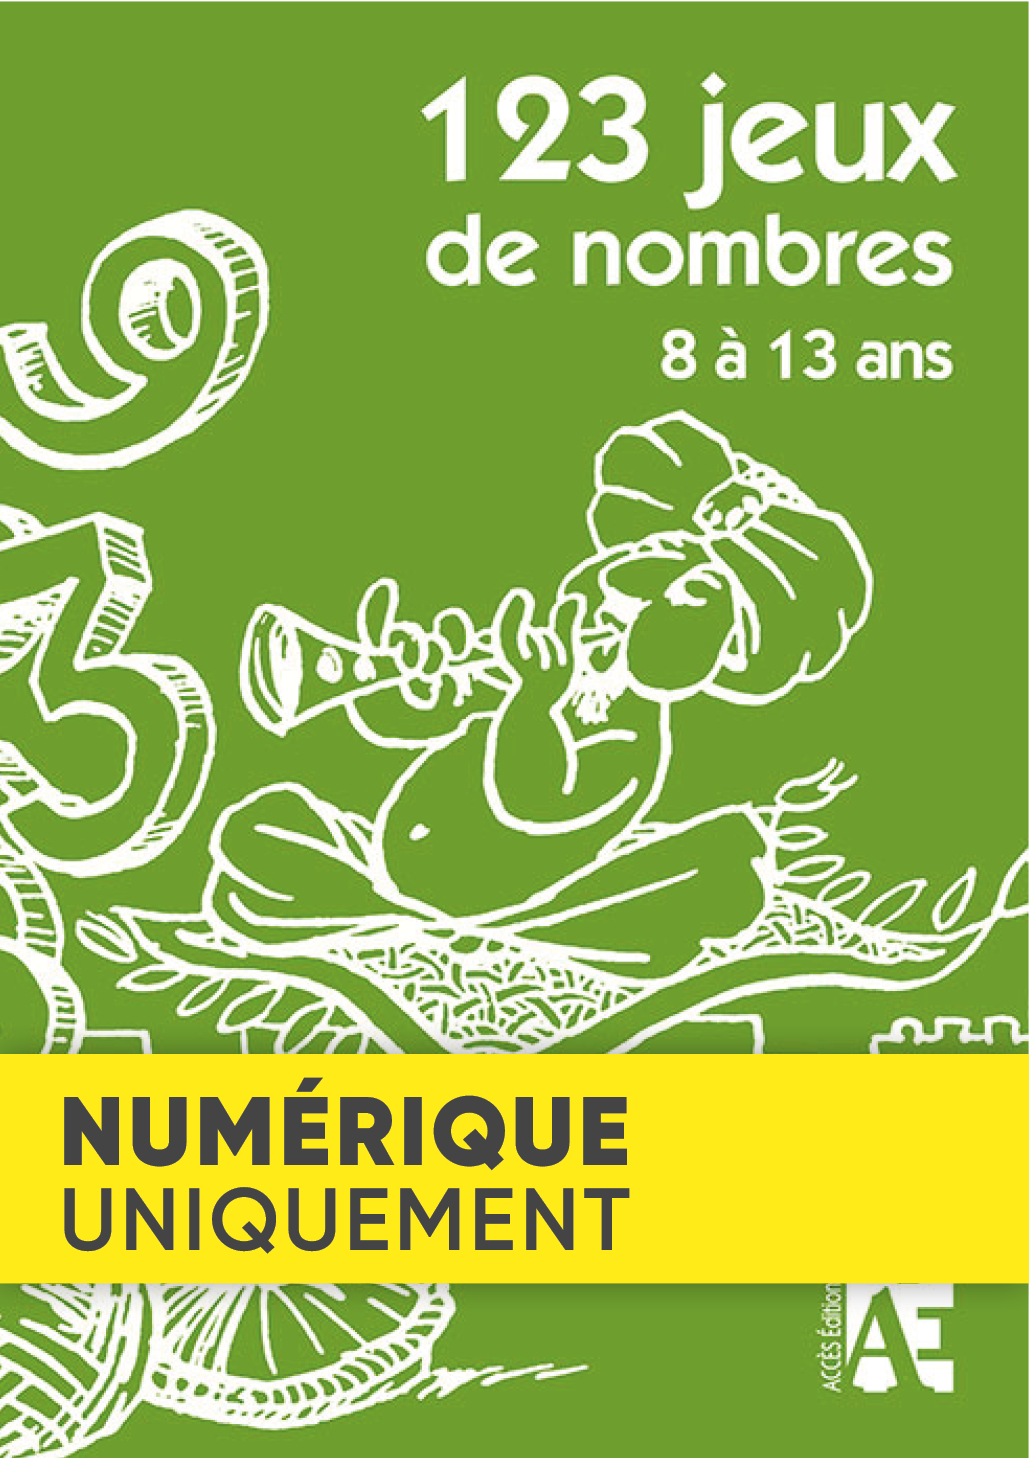 Couverture de l'ouvrage pédagogique 123 Jeux de nombres 8 à 13 ans illustrée par un personnage qui charme des chiffres.